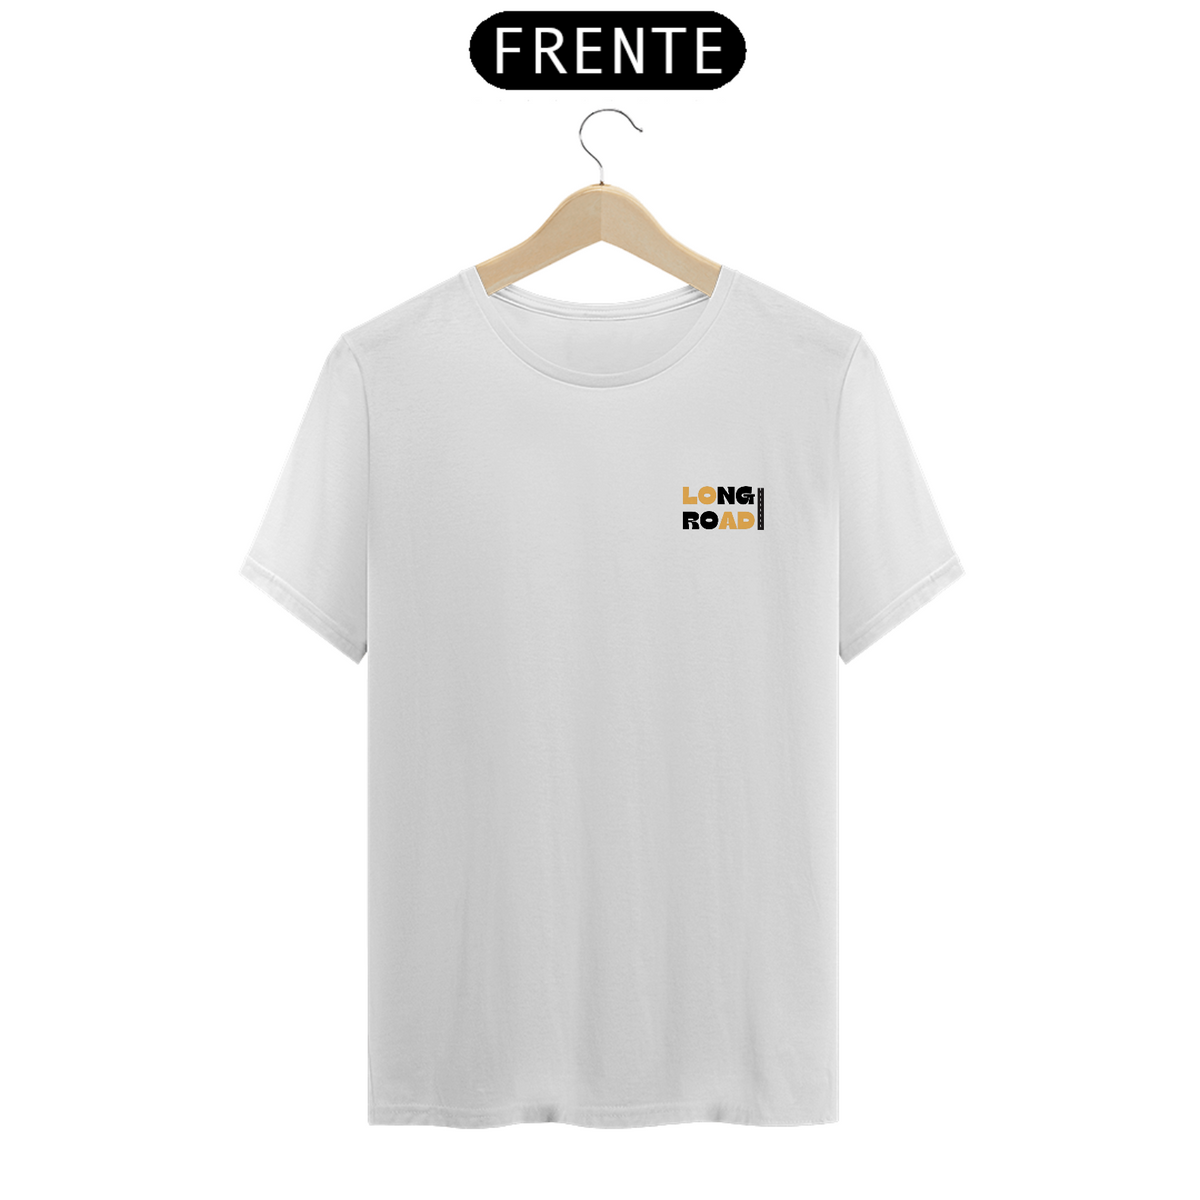 Nome do produto: Camisa Quality, Long Road, Logo Pequeno, Branco